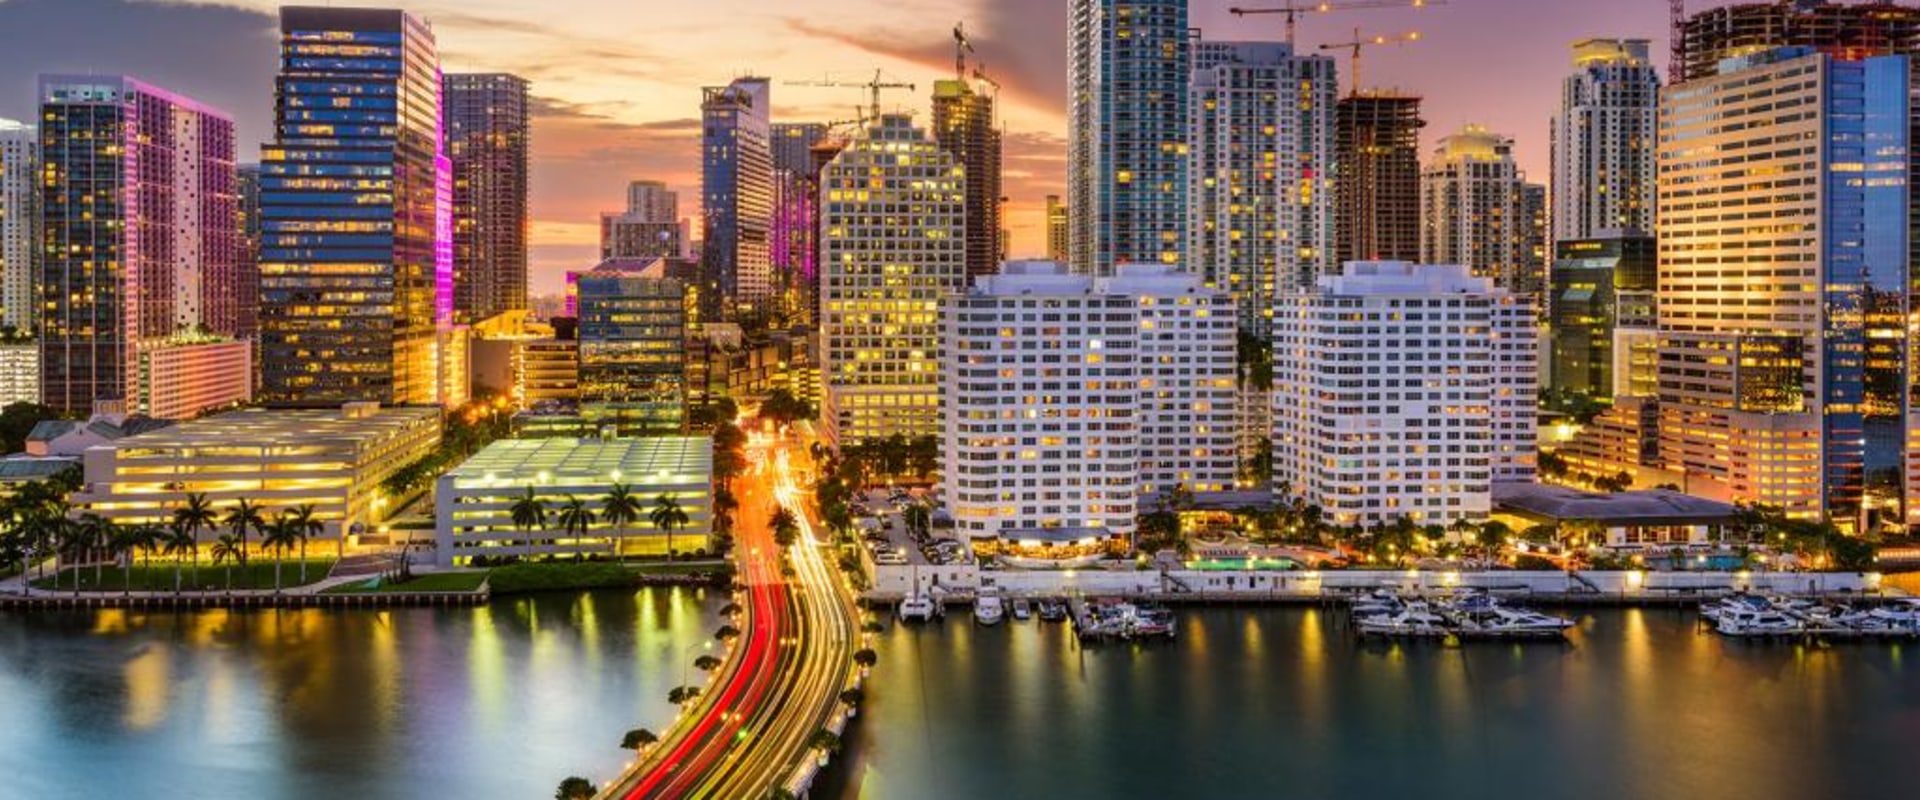 Hire an Auto Transport Company in Miami